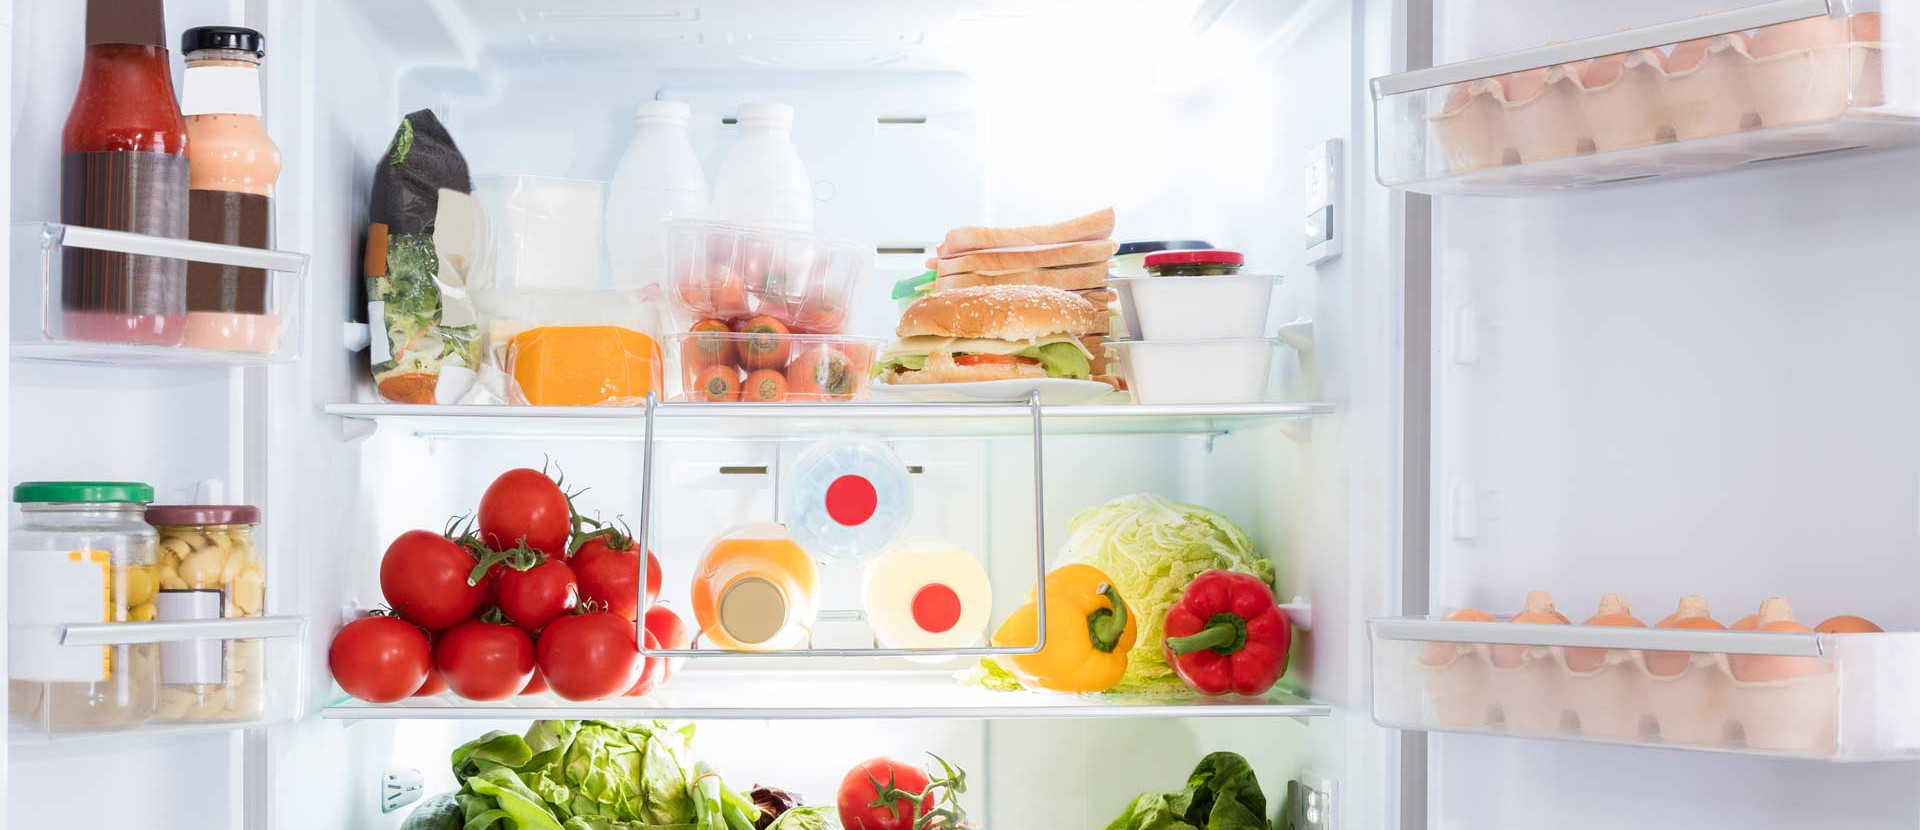 Blick in einen gefüllten Kühlschrank, der Lebensmittel richtig lagert